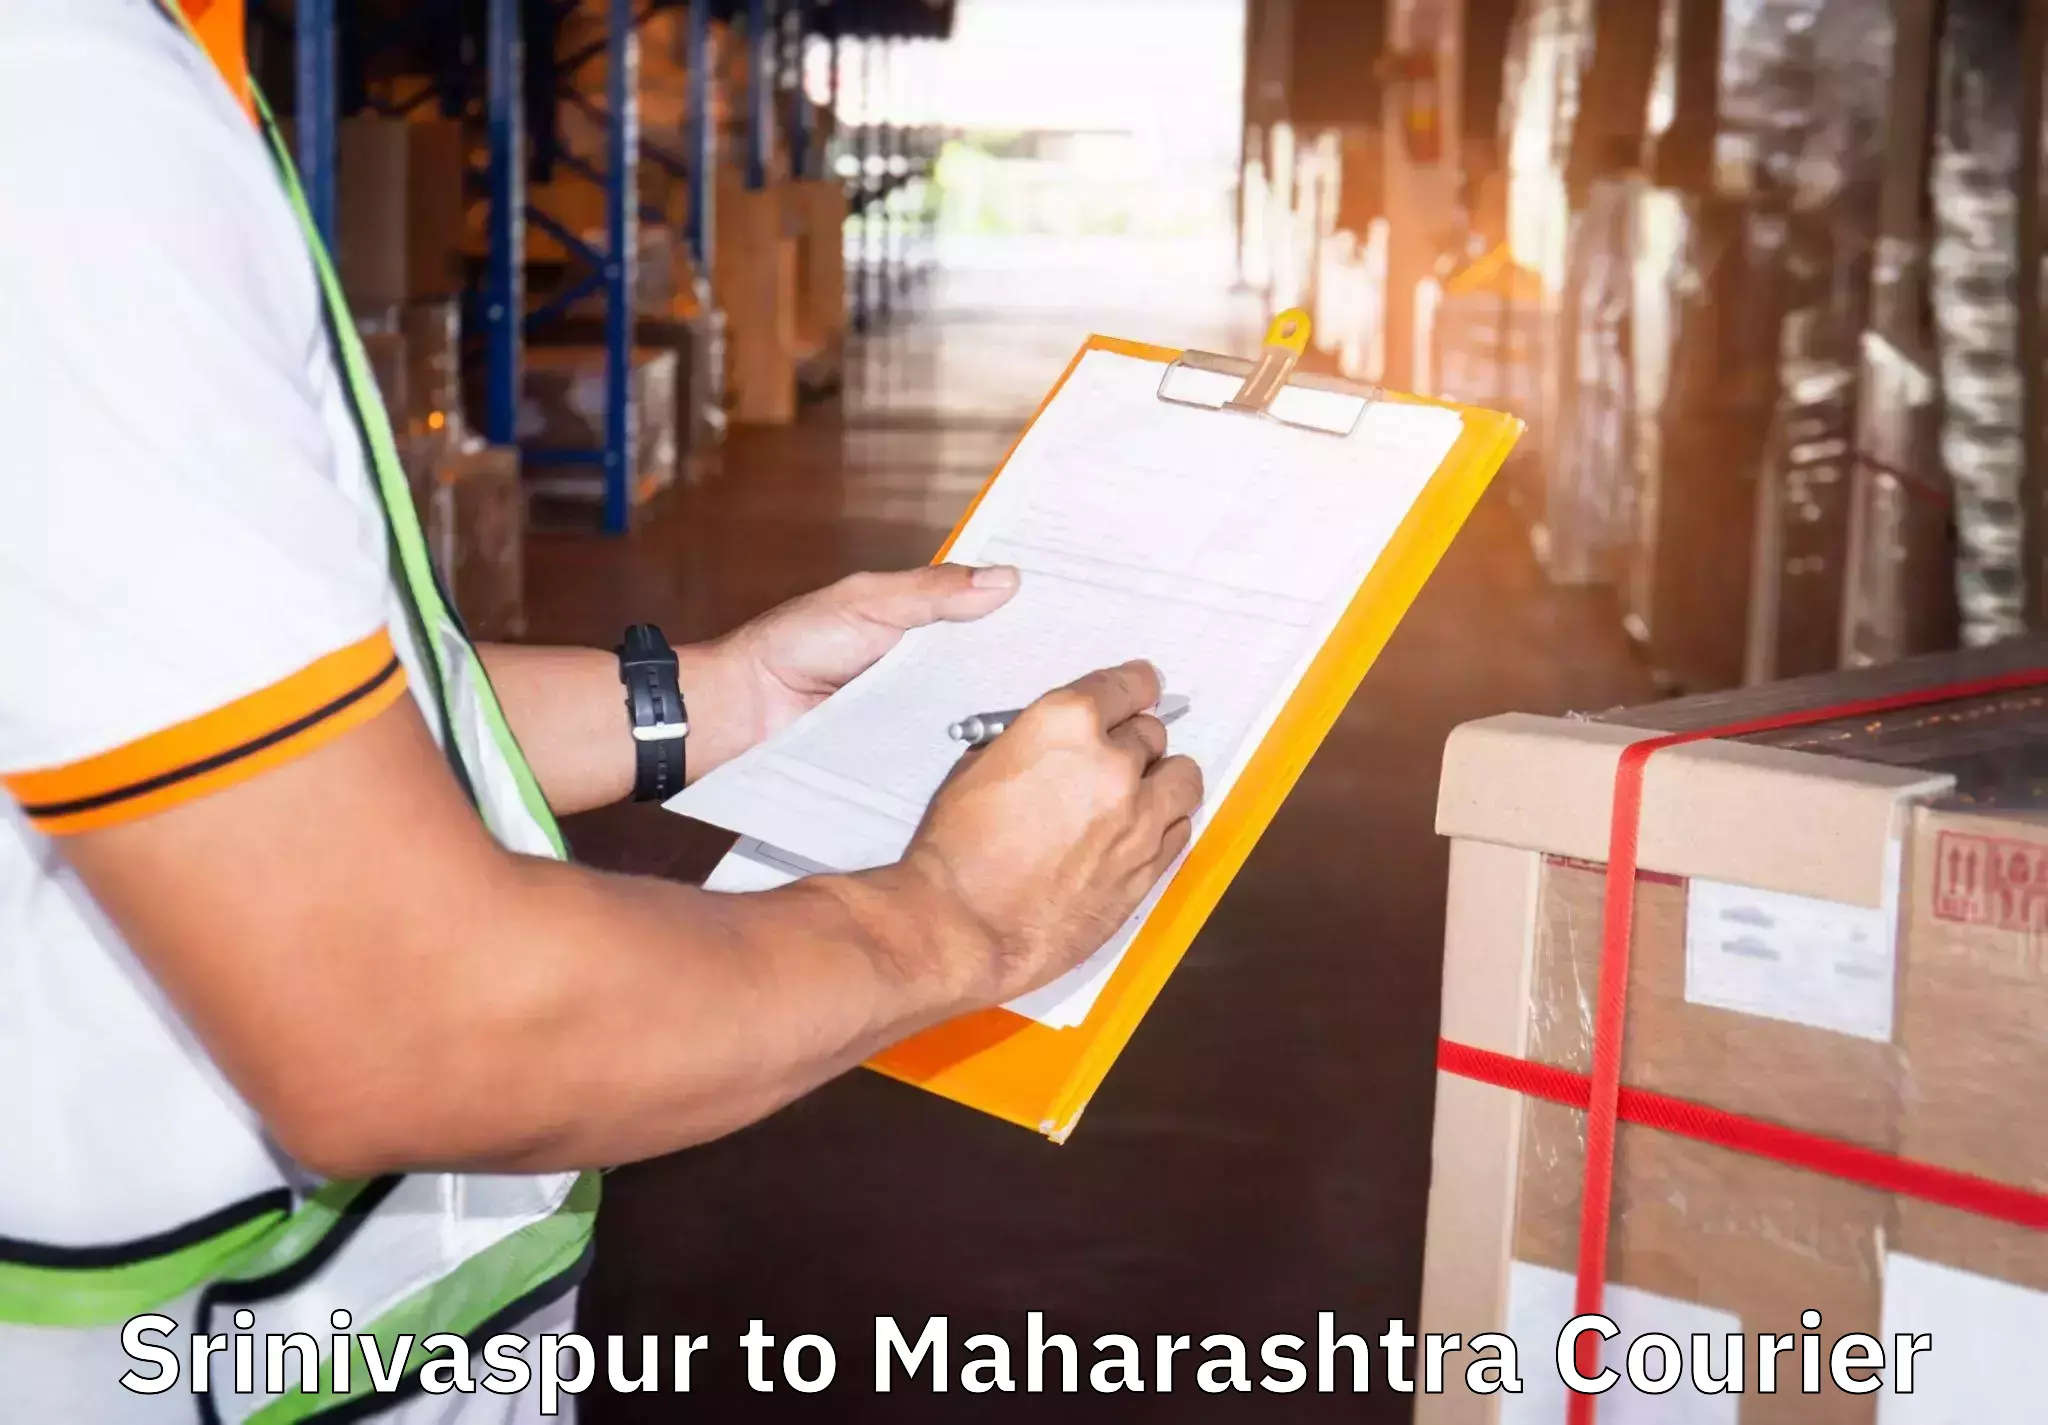 Household goods transporters Srinivaspur to Pune